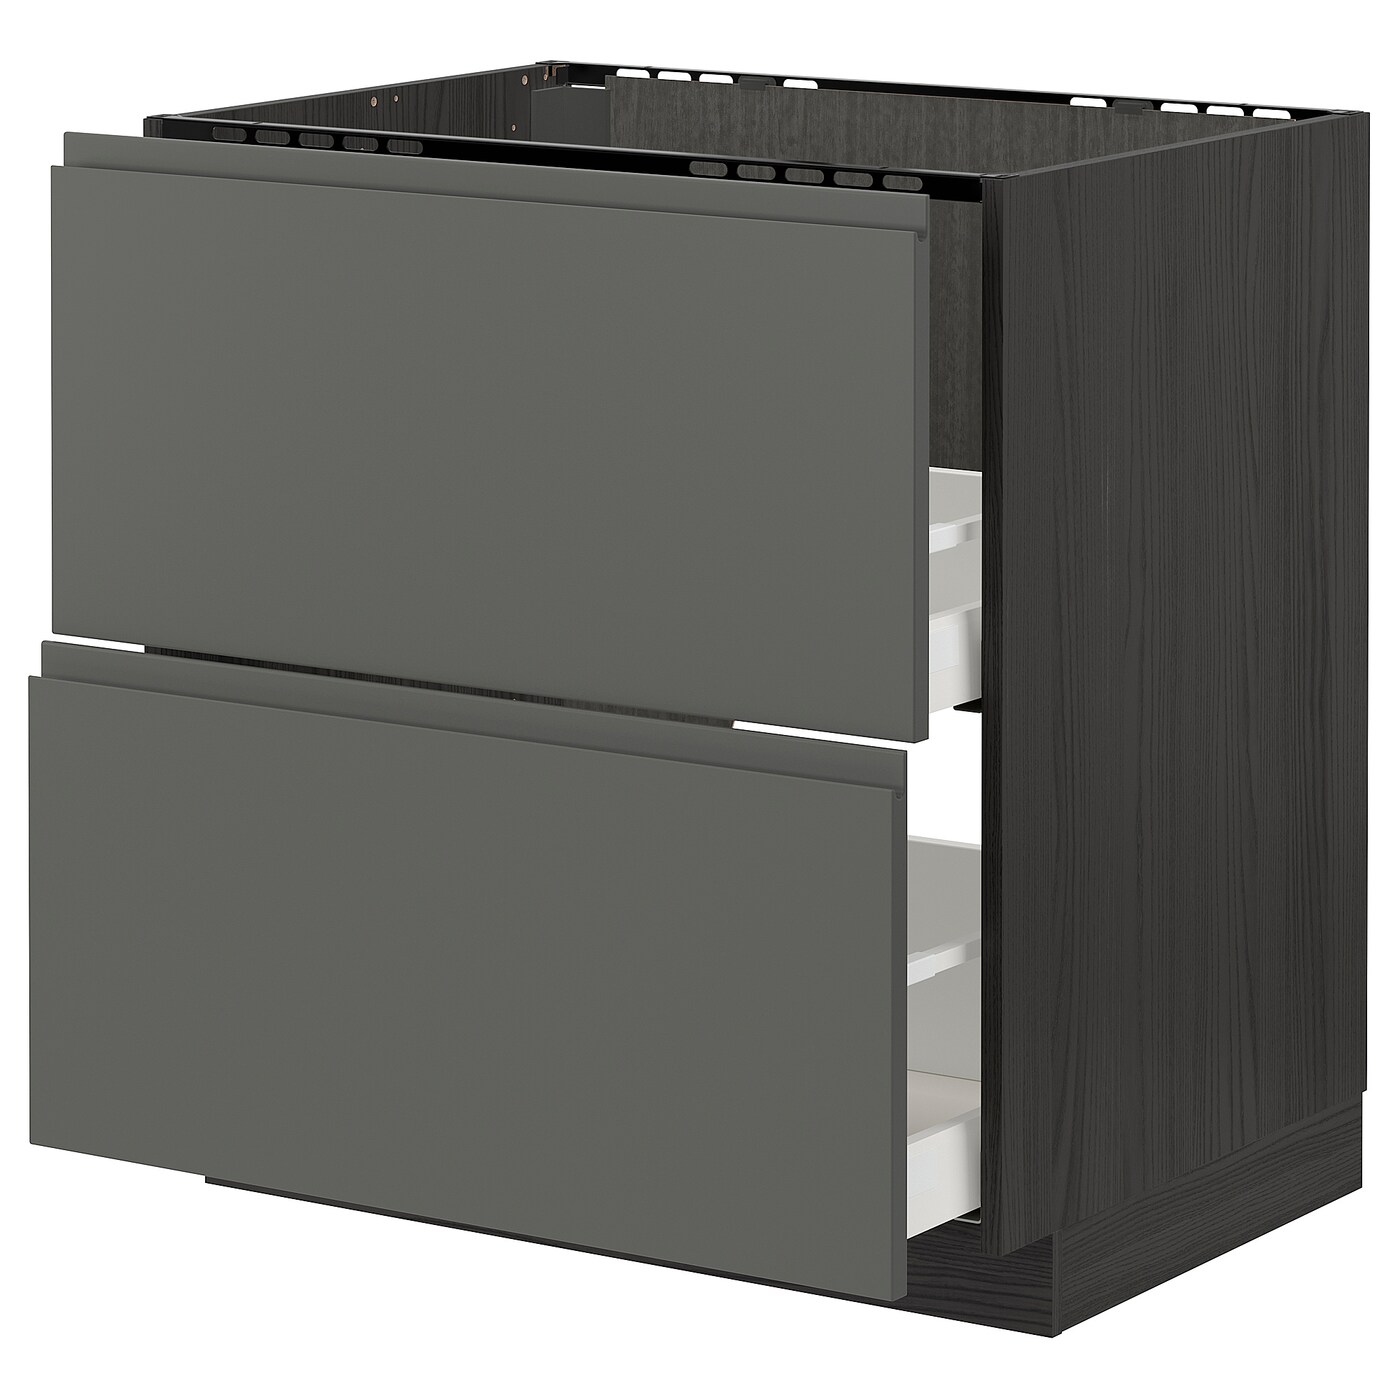 Напольный кухонный шкаф  - IKEA METOD MAXIMERA, 88x62x80см, черный/темно-серый, МЕТОД МАКСИМЕРА ИКЕА